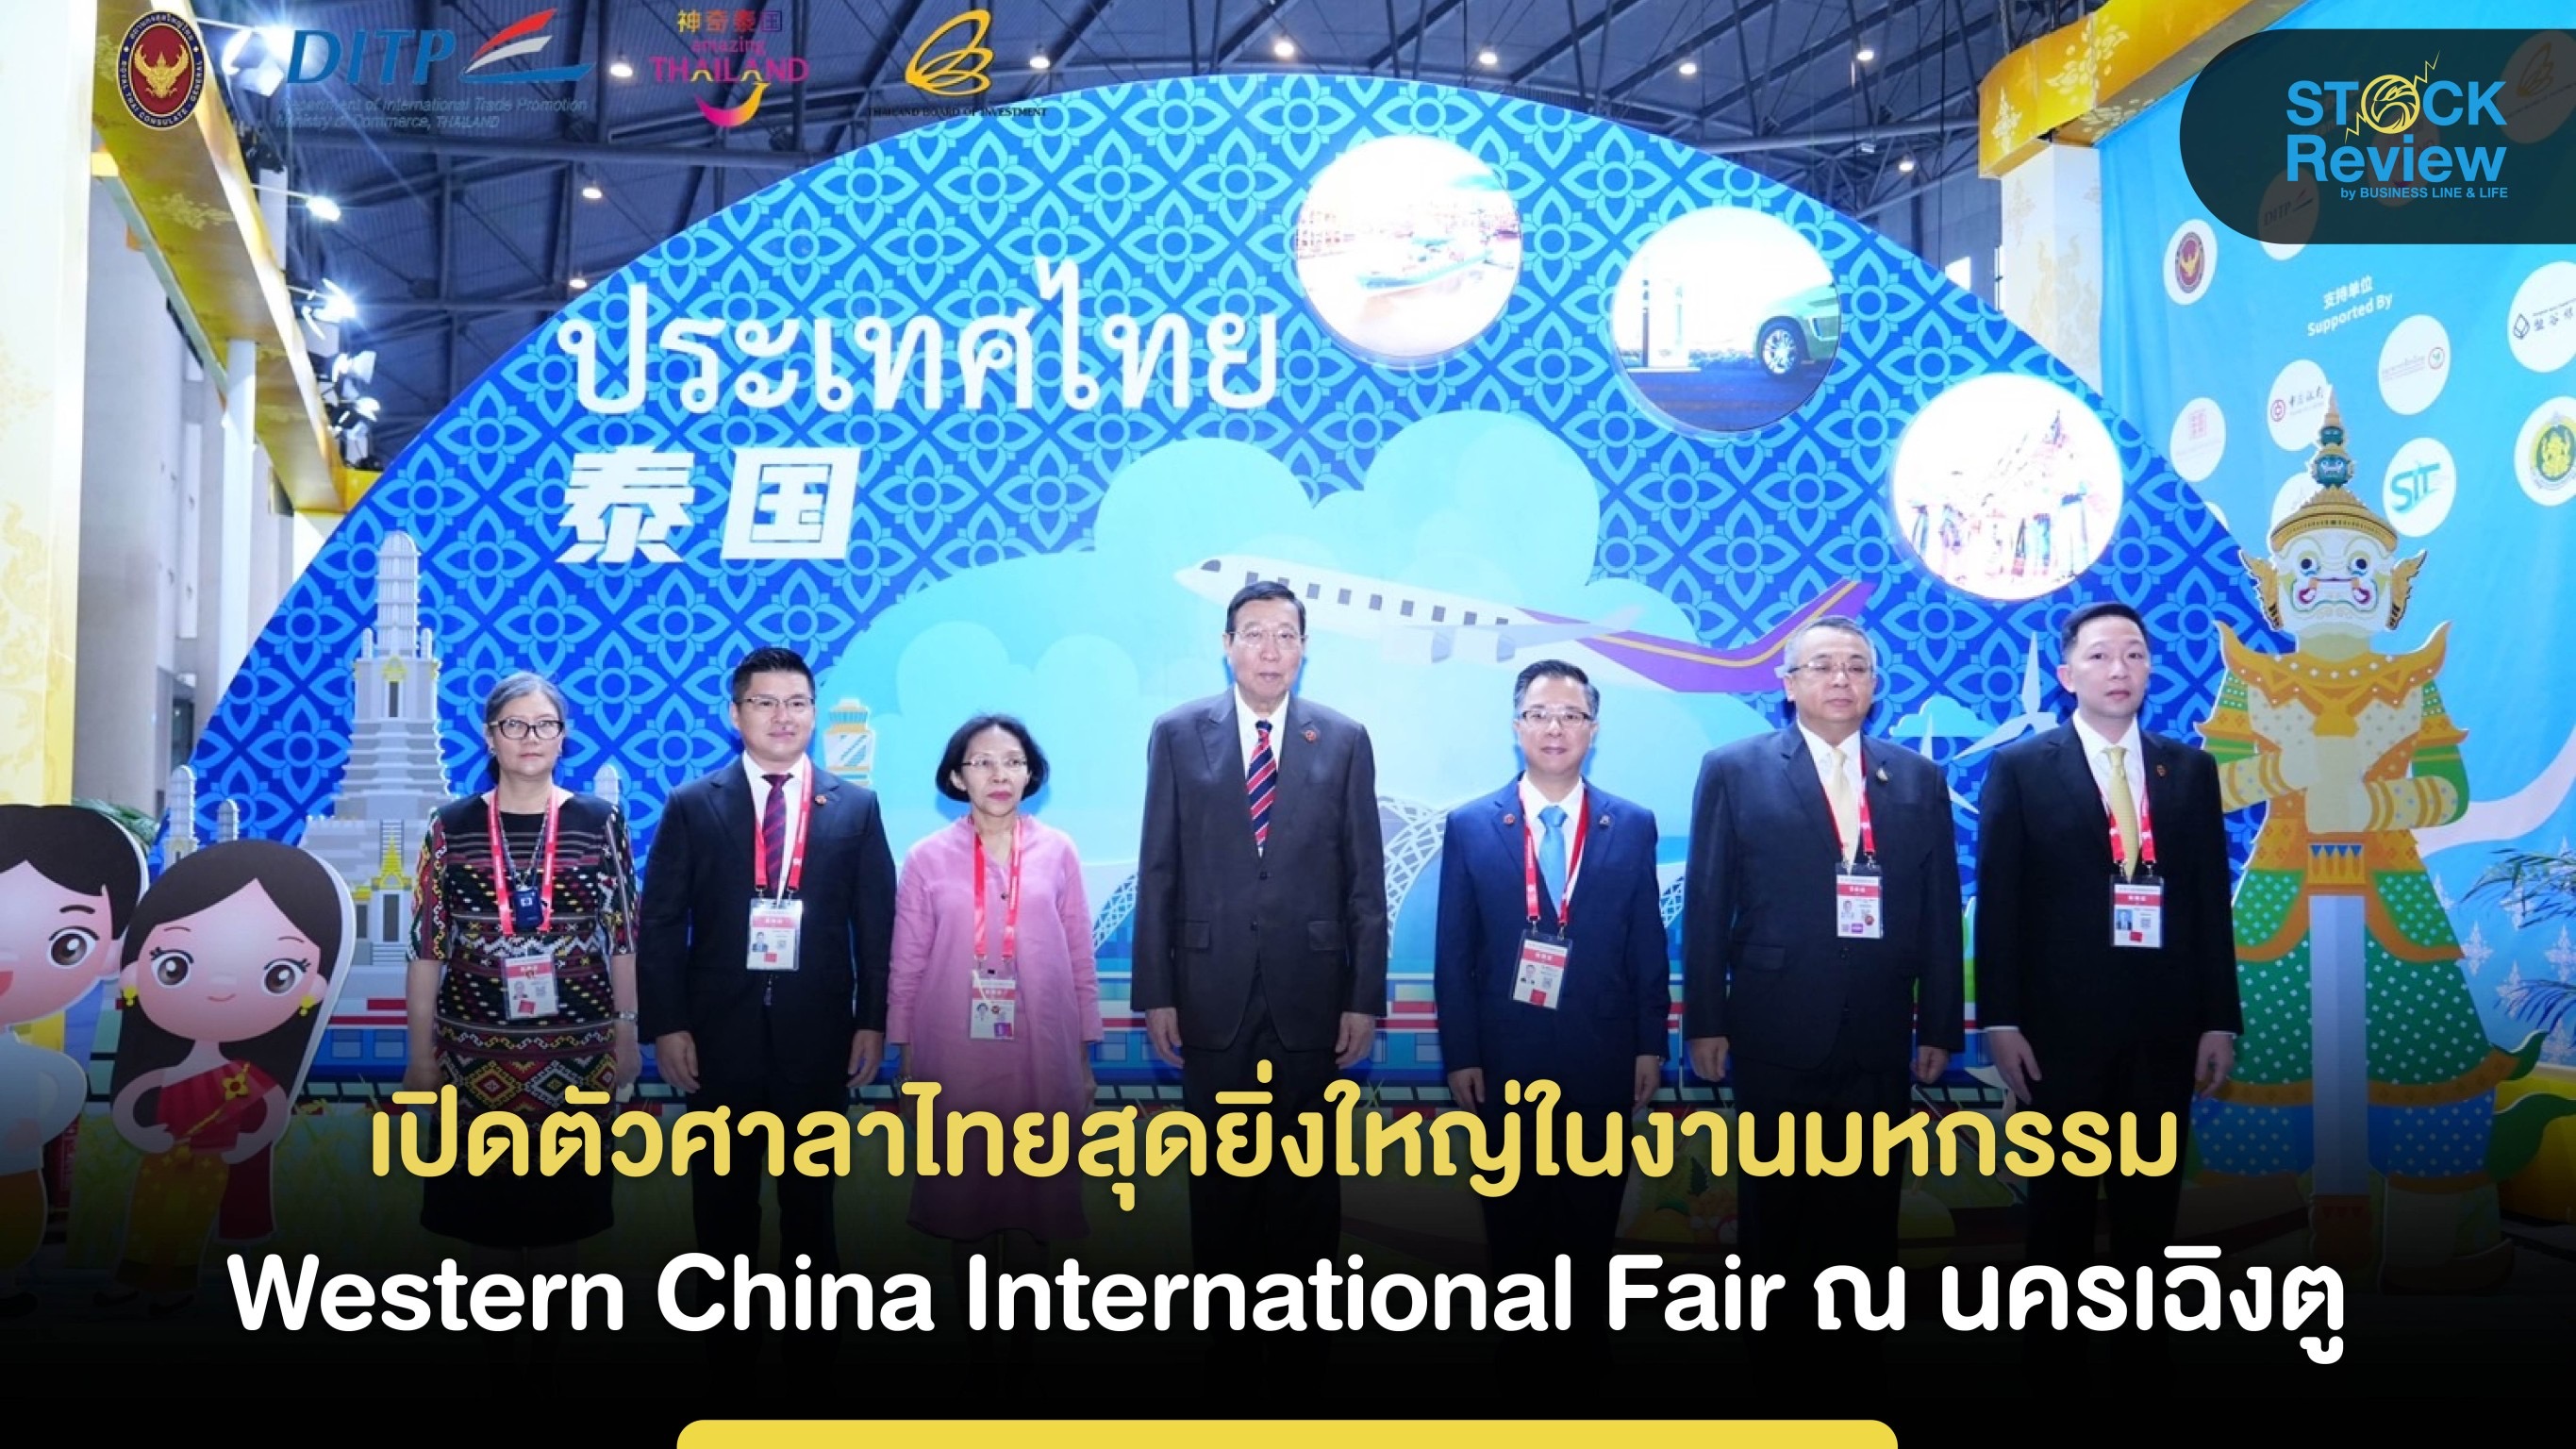 เปิดตัว”ศาลาไทย” สุดยิ่งใหญ่ในงานมหกรรม Western China International Fair ณ นครเฉิงตู